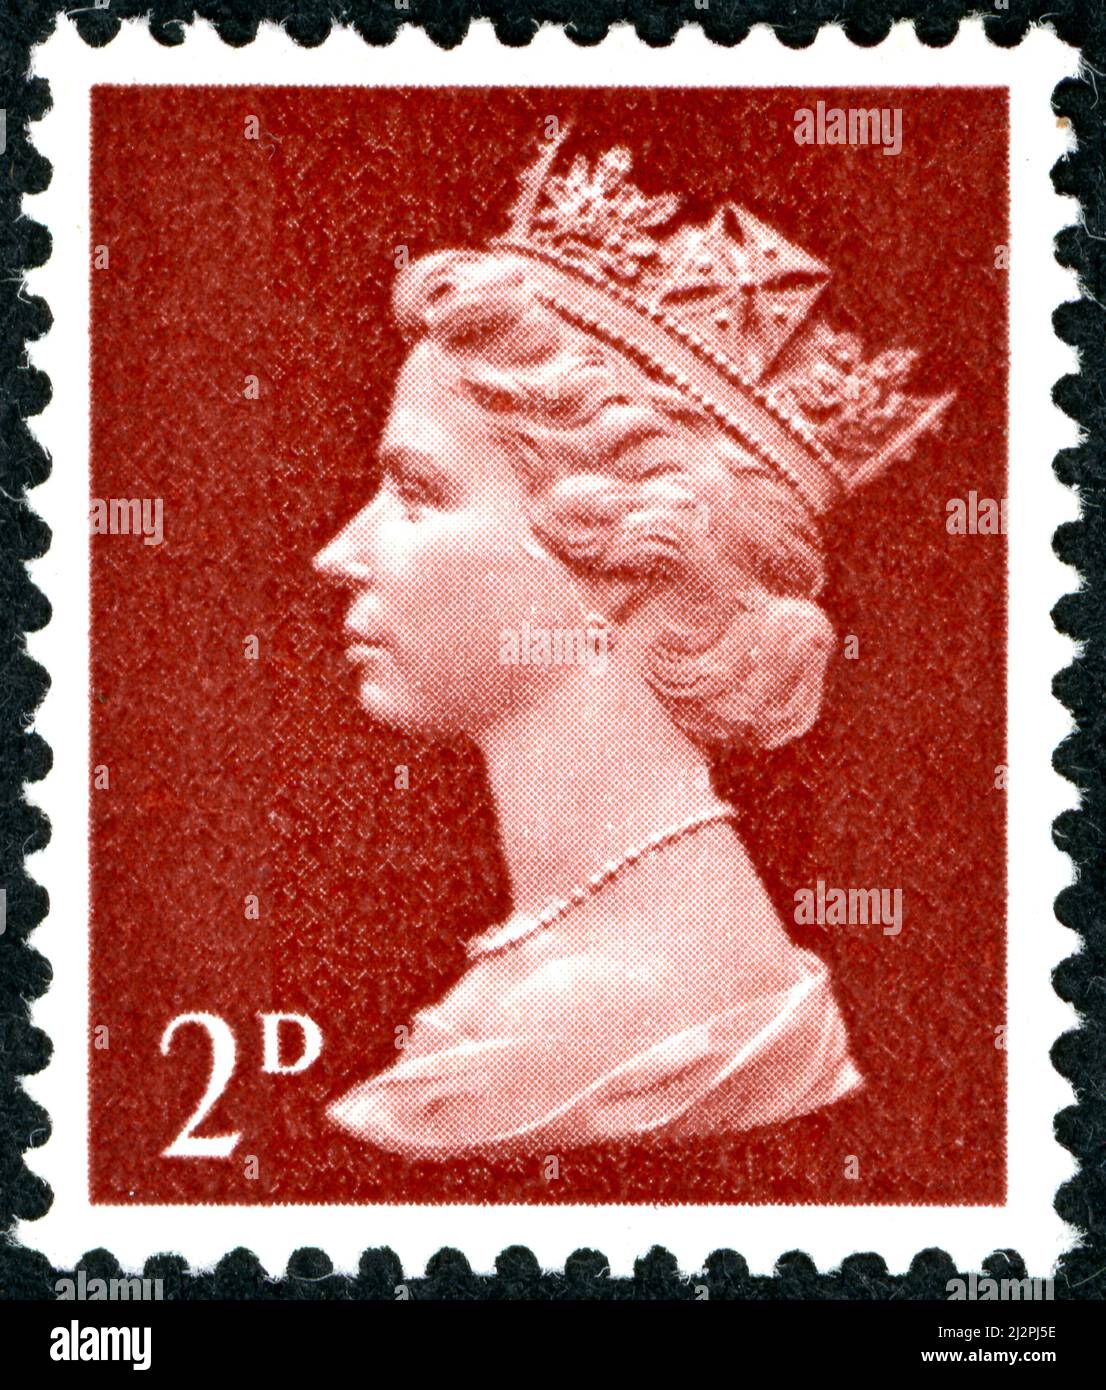 ROYAUME-UNI - VERS 1967: Un timbre imprimé en Angleterre, montre la reine Elizabeth II, vers 1967 Banque D'Images